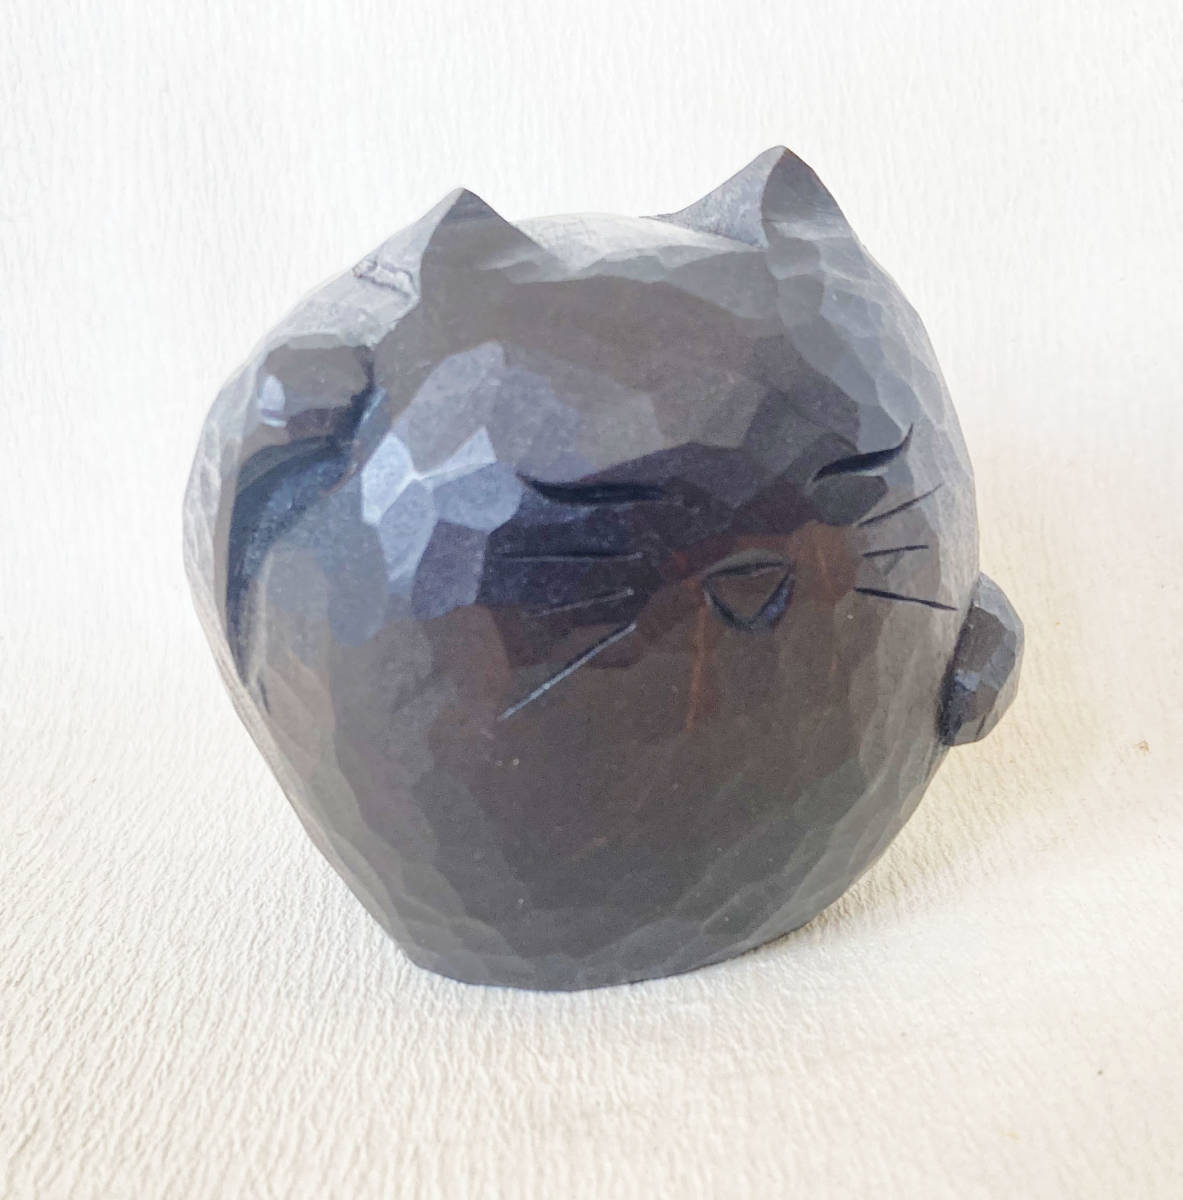 Figurine presse-papier chat chanceux laque bois fait à la main Sanuki laque ornement, Articles faits à la main, intérieur, marchandises diverses, ornement, objet